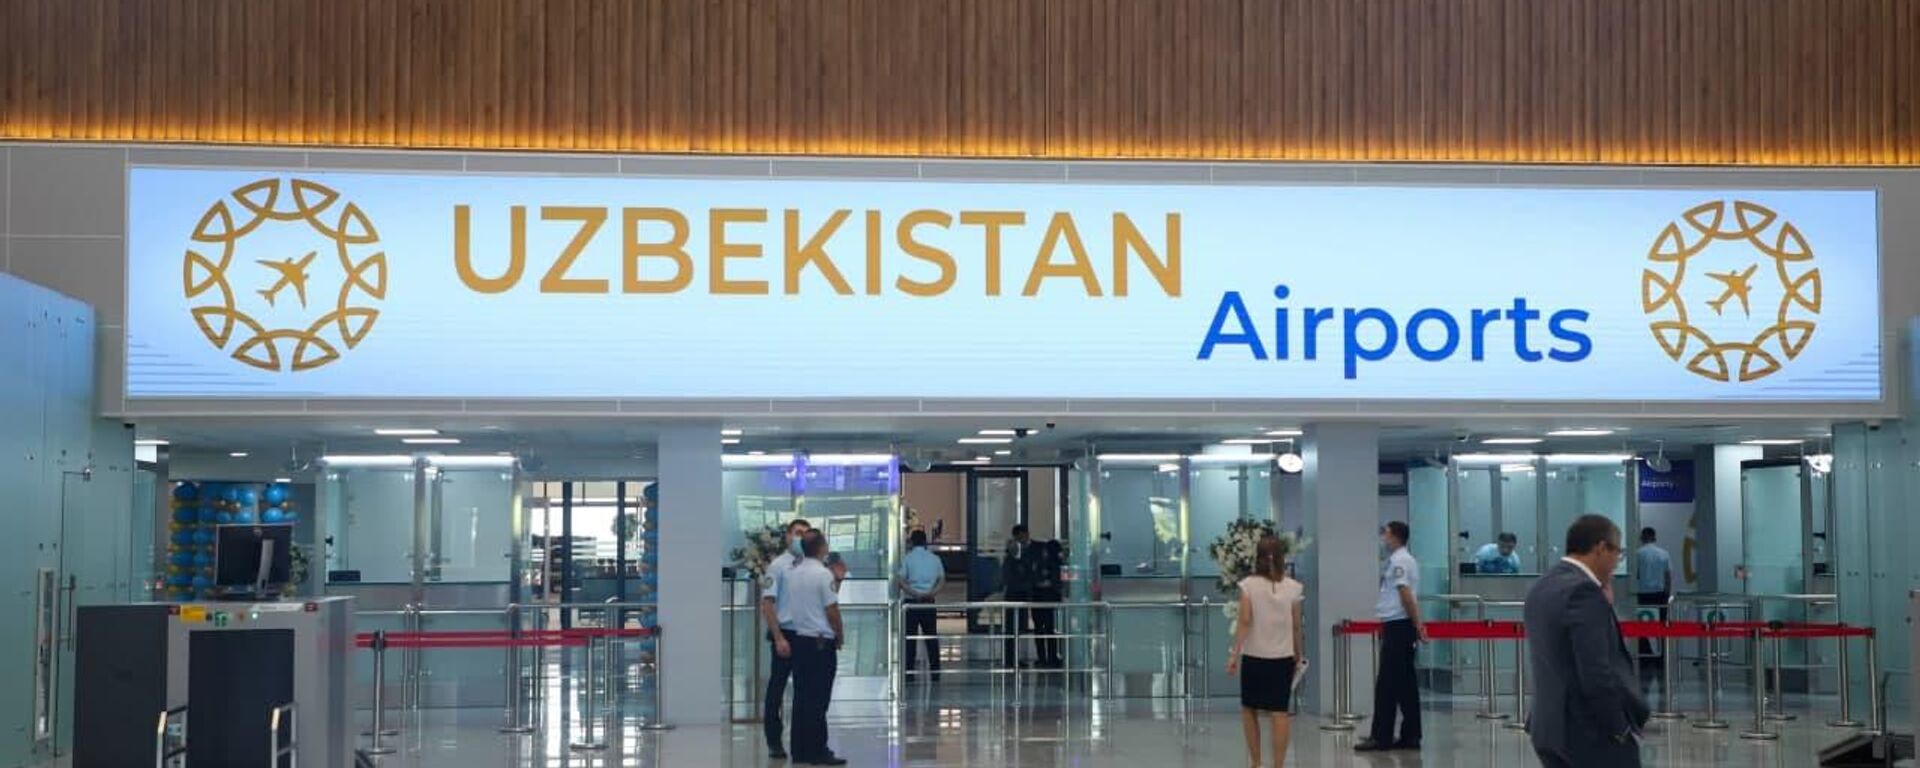 Uzbekistan Airports - Sputnik Узбекистан, 1920, 21.10.2021